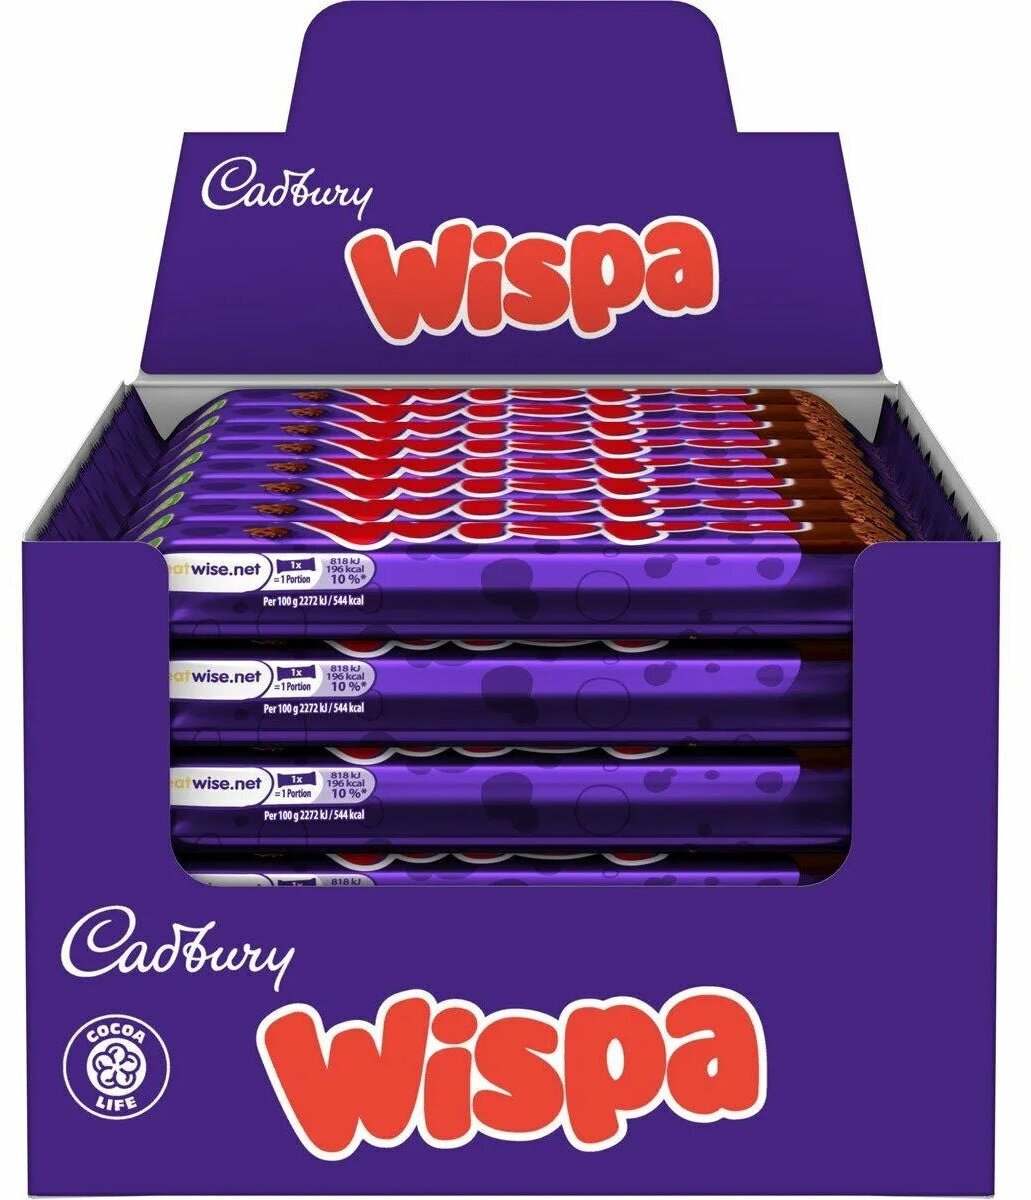 Пористый воздушный шоколадный батончик Cadbury Wispa (Великобритания), 36 г (48 шт)